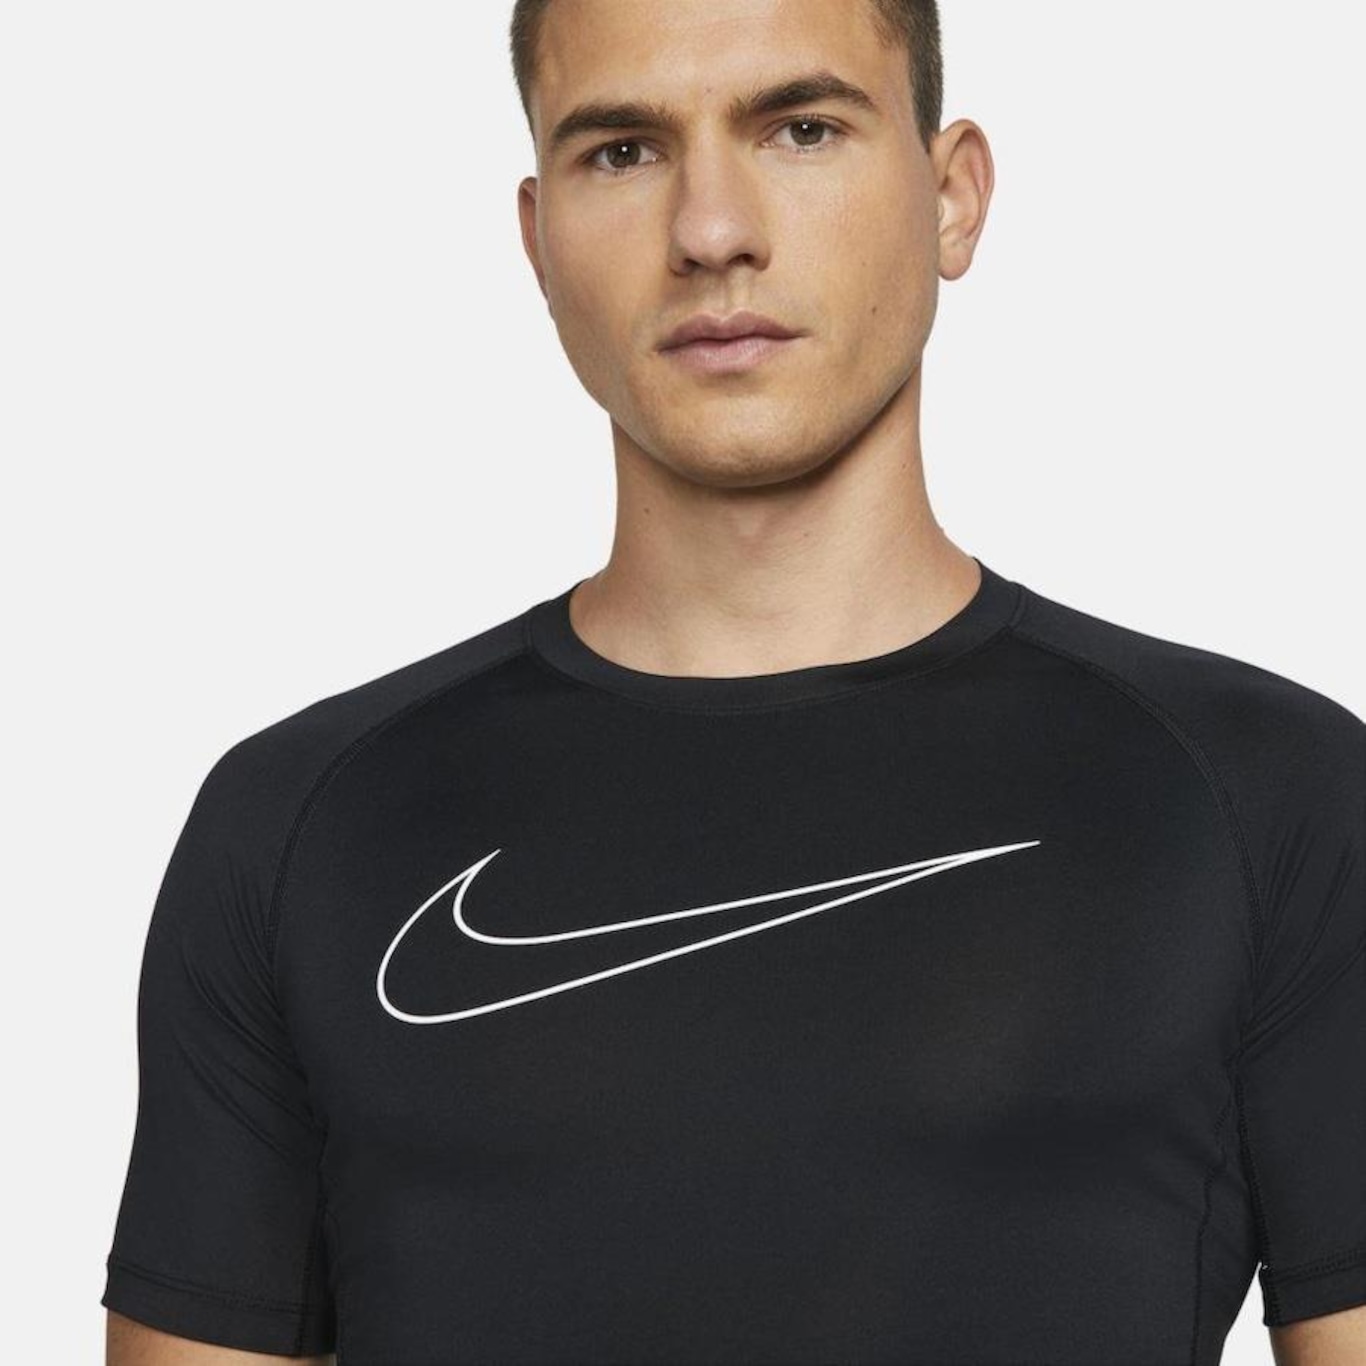 Camiseta Nike Pro Masculina - Nike